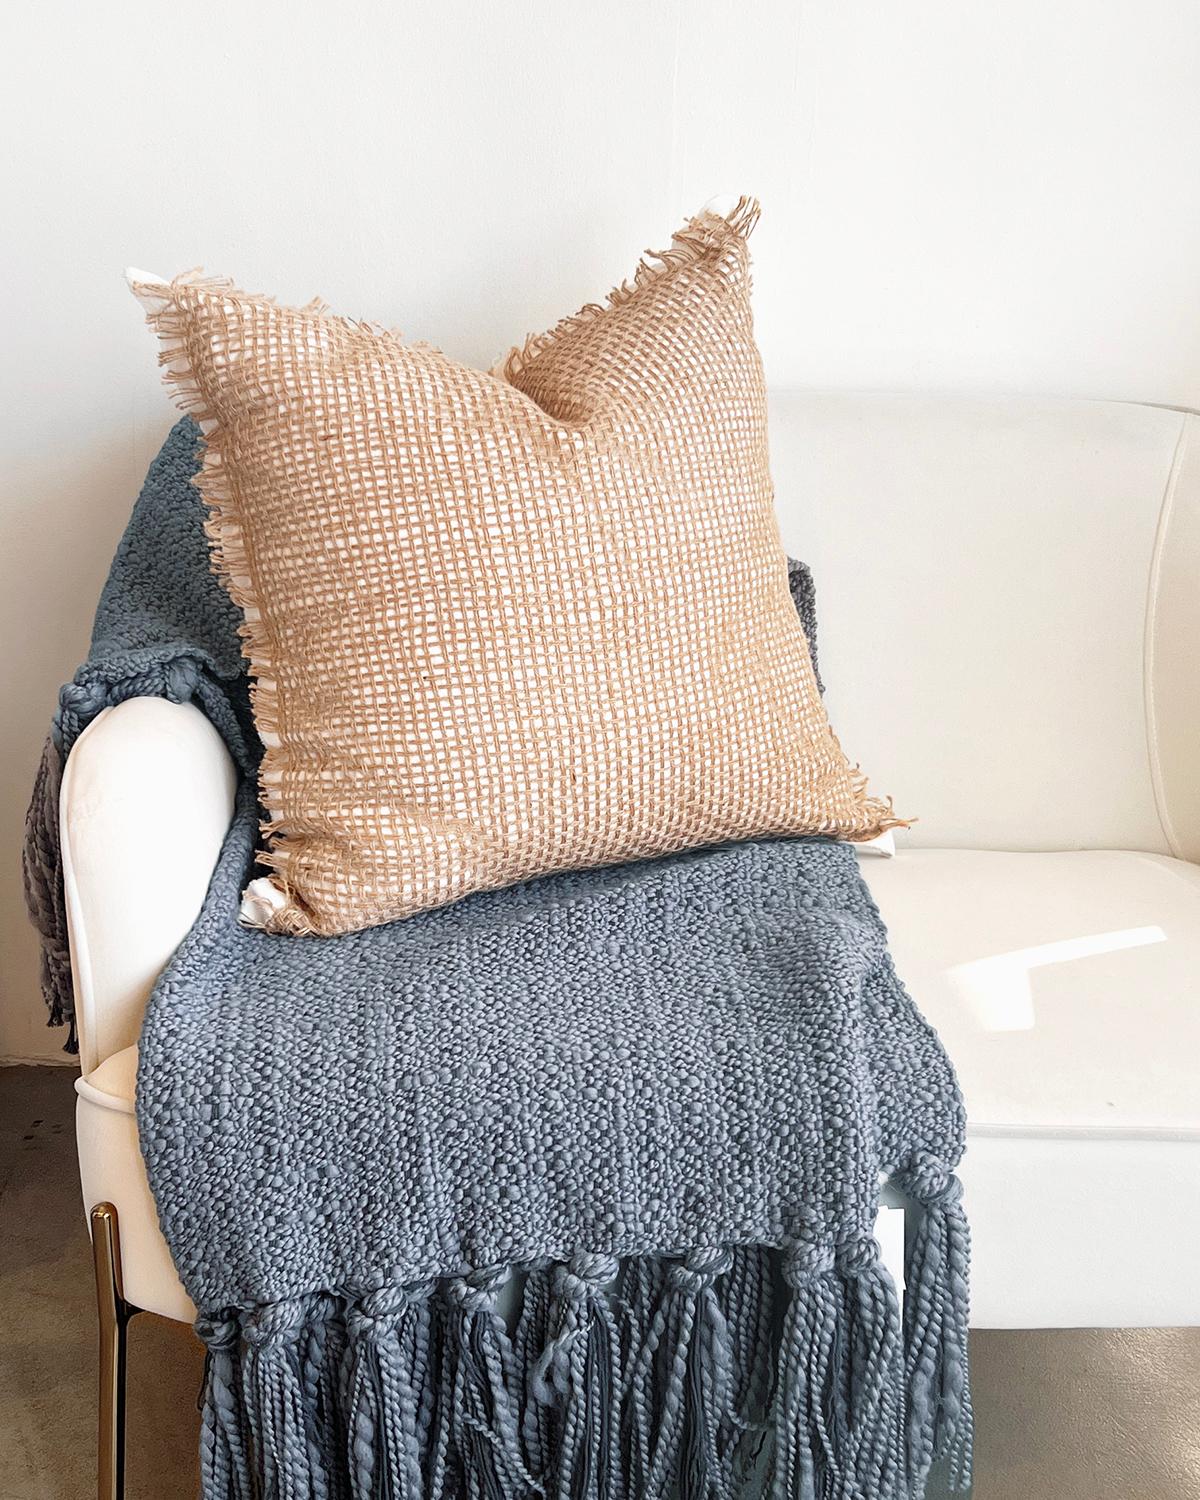 Un coussin rustique pour votre canapé. Ajoutez une touche de charme rustique à votre décoration intérieure avec notre oreiller en lin et jute Tramas. Doté d'un tissage ouvert en lin et en jute, ce coussin est parfait pour tout canapé, fauteuil ou